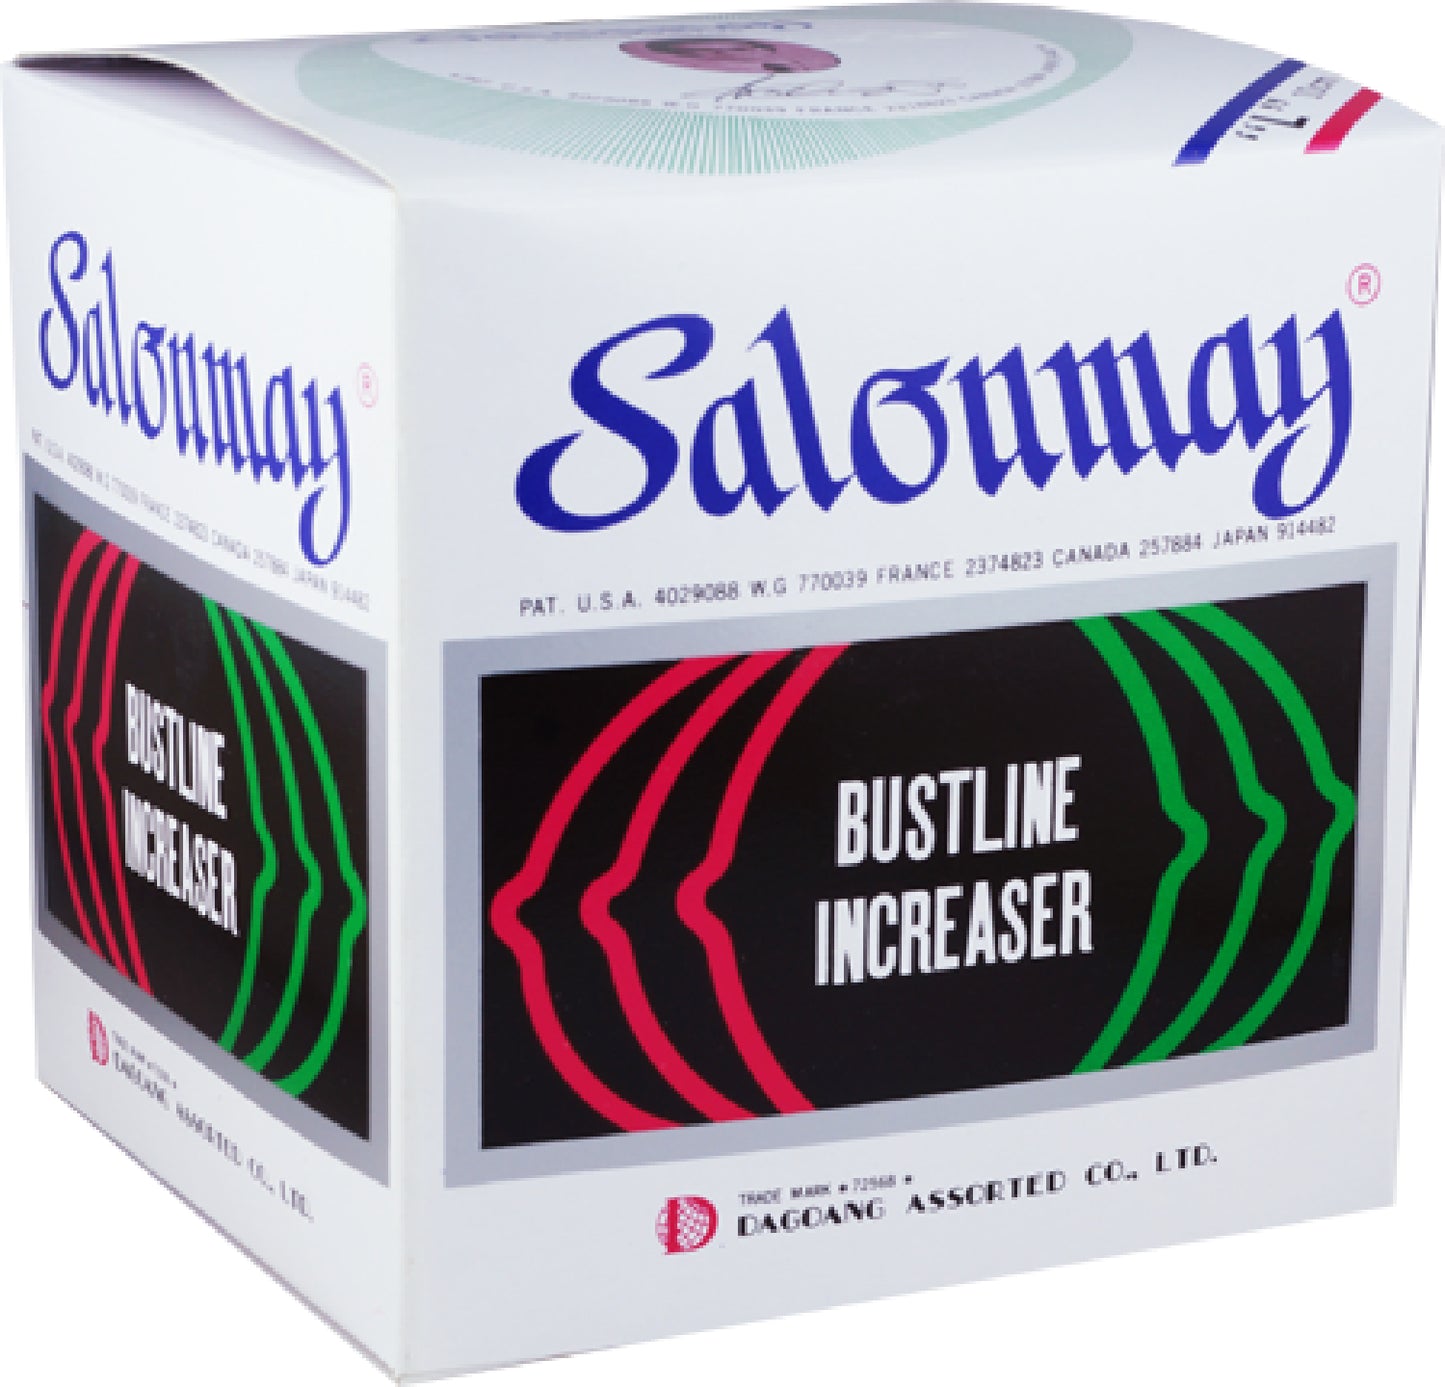 Bustline Increaser (Small) Breast Pump  - Club X